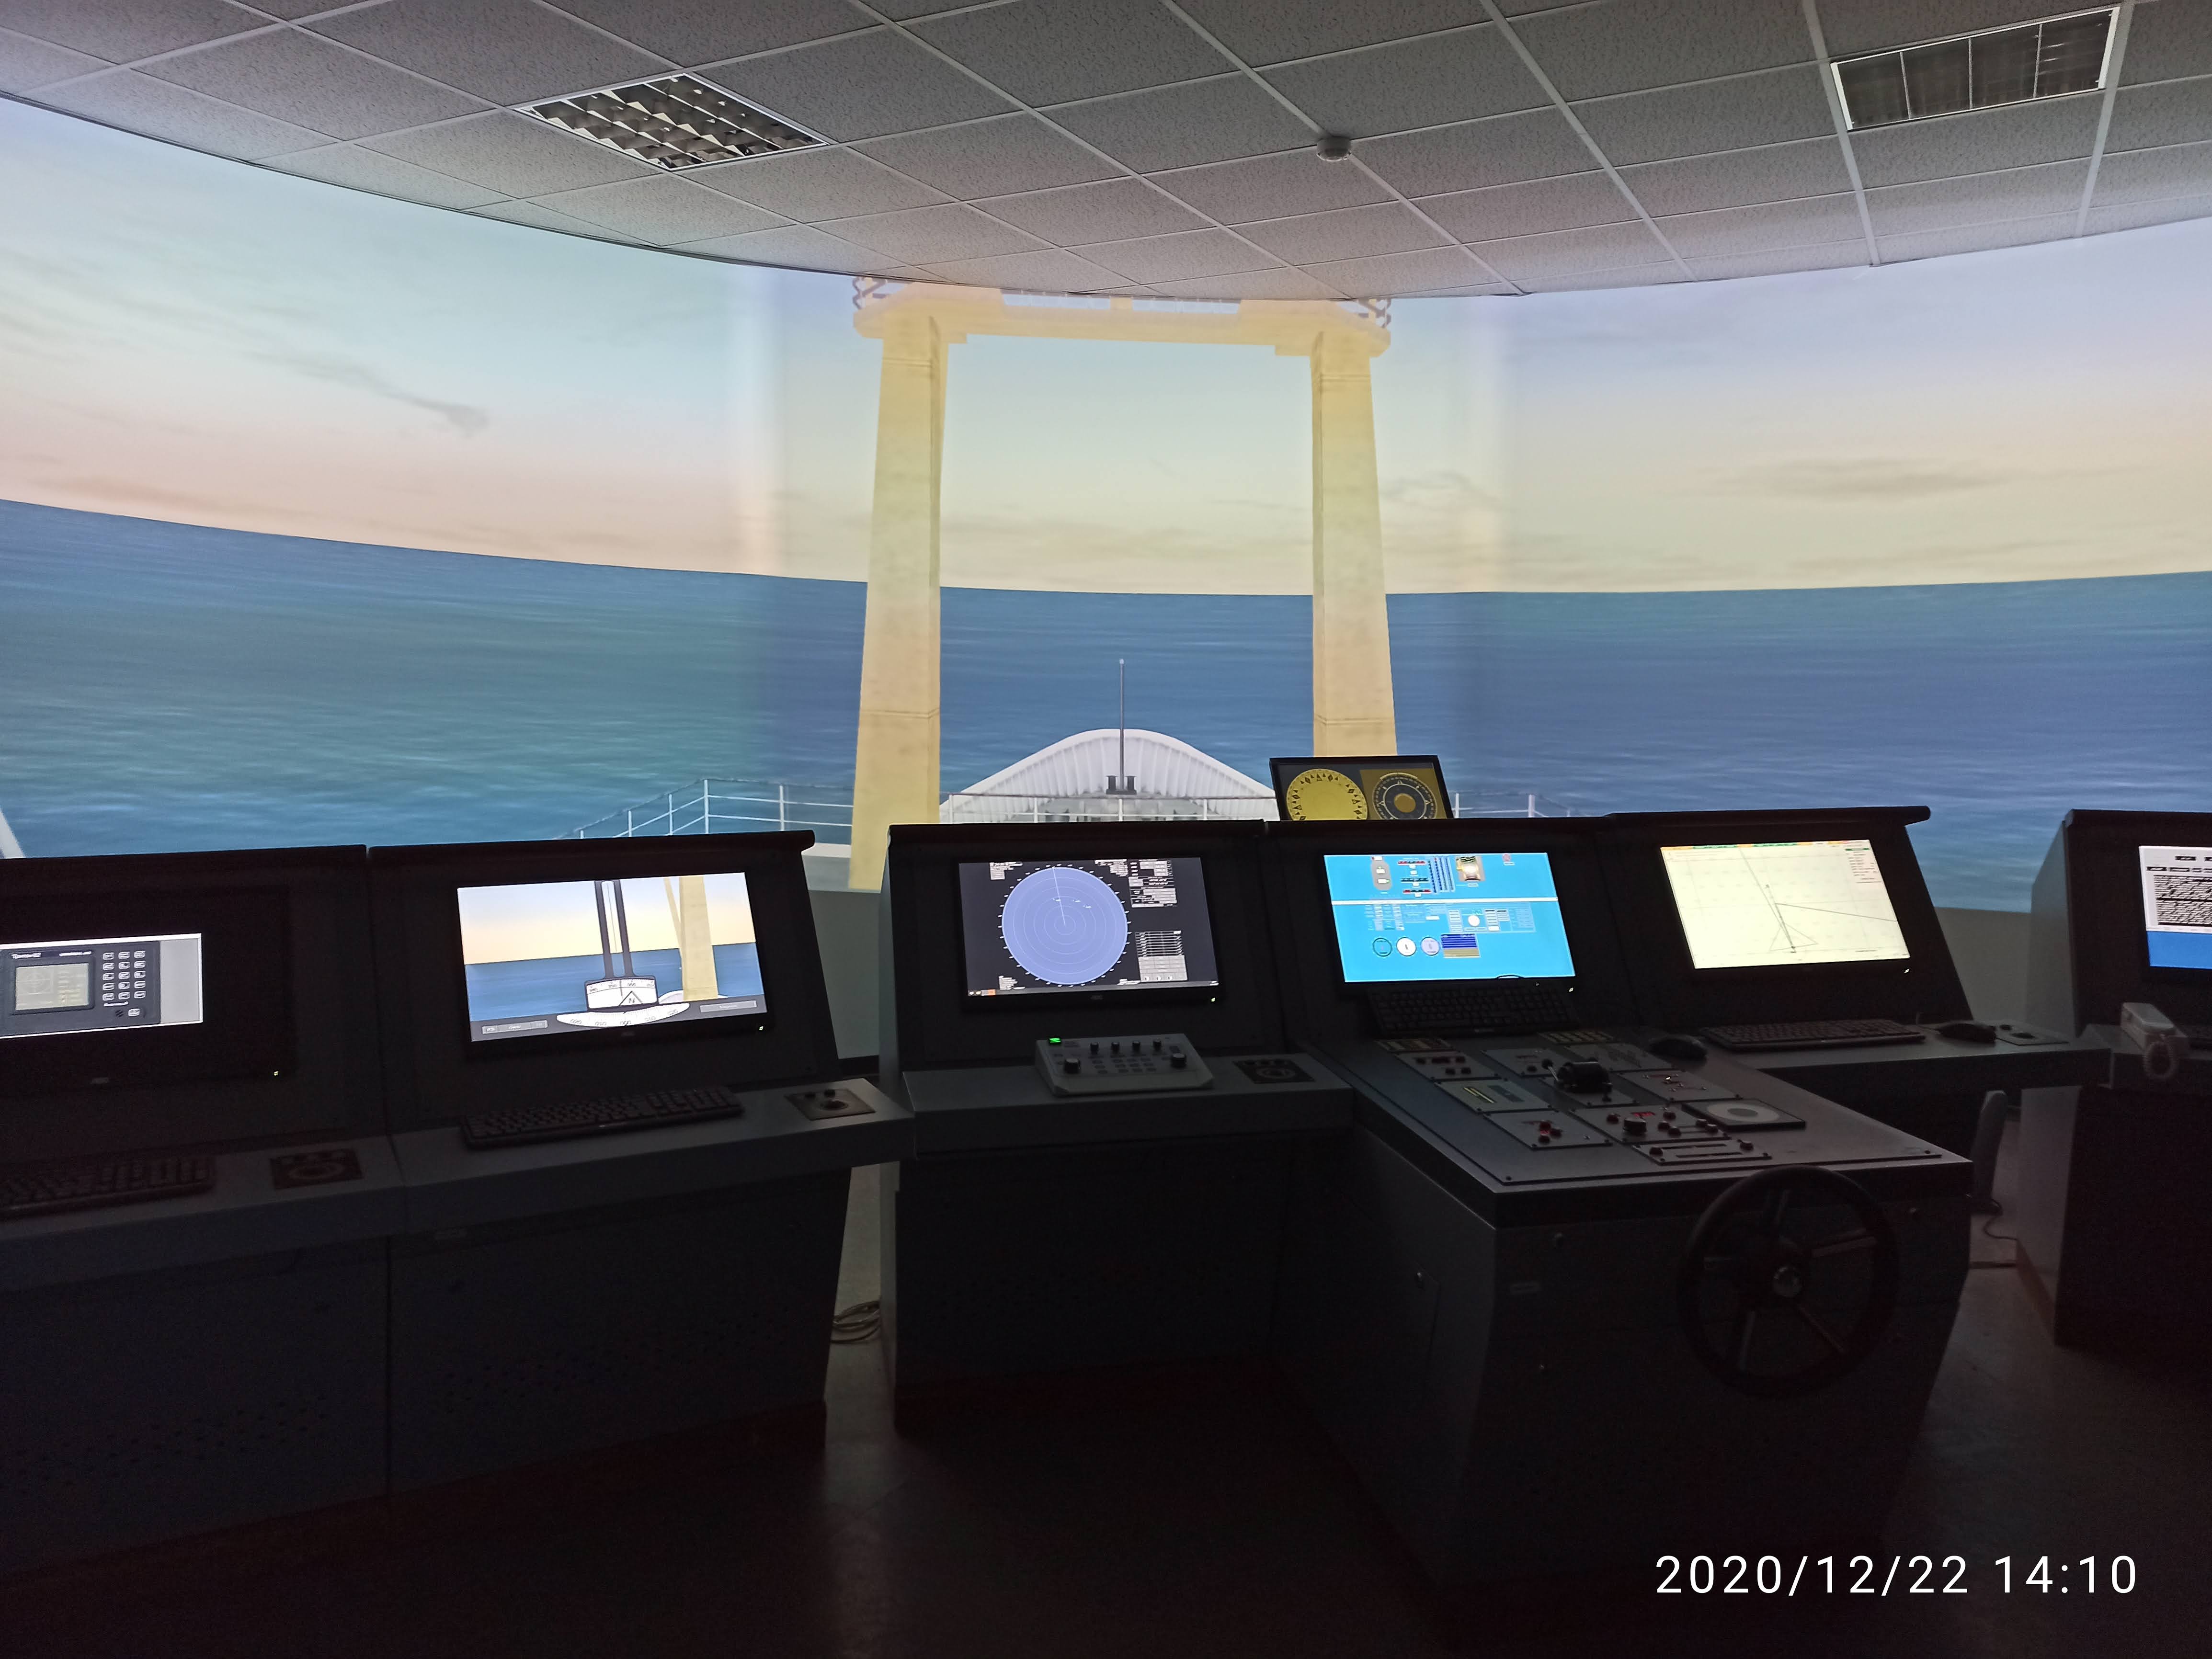 полномасштабный интегрированный мостик судна с трехканальной системой визуализации на ЖК панелях